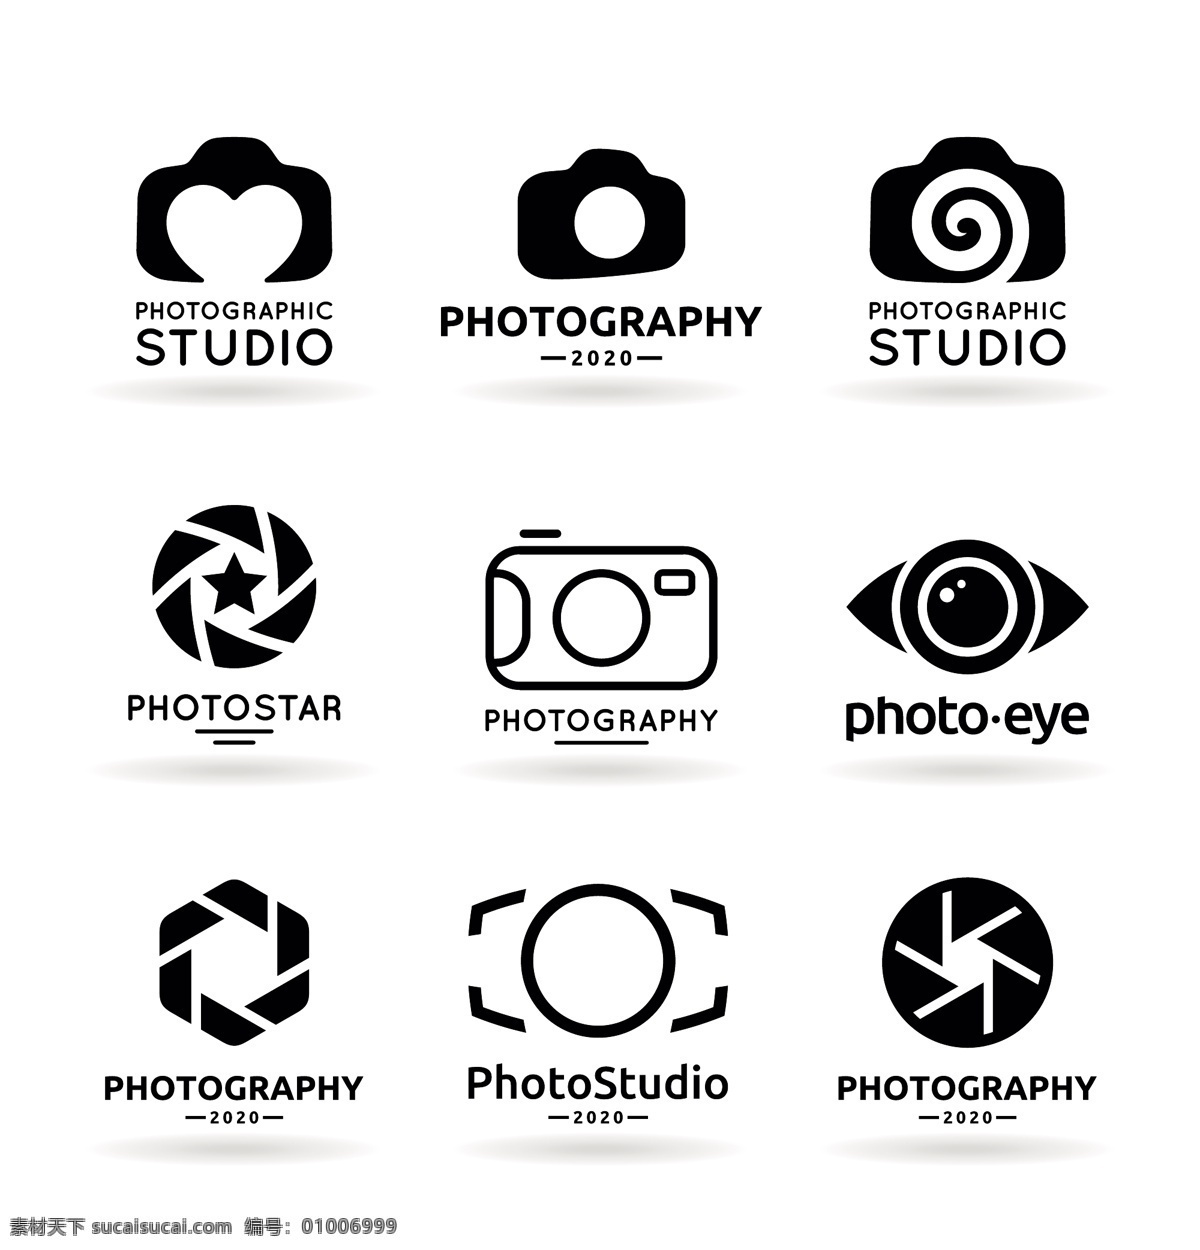 主题 logo 摄影主题 照相机 logo设计 商标 公司标志 产品标识 标志图标 矢量素材 白色